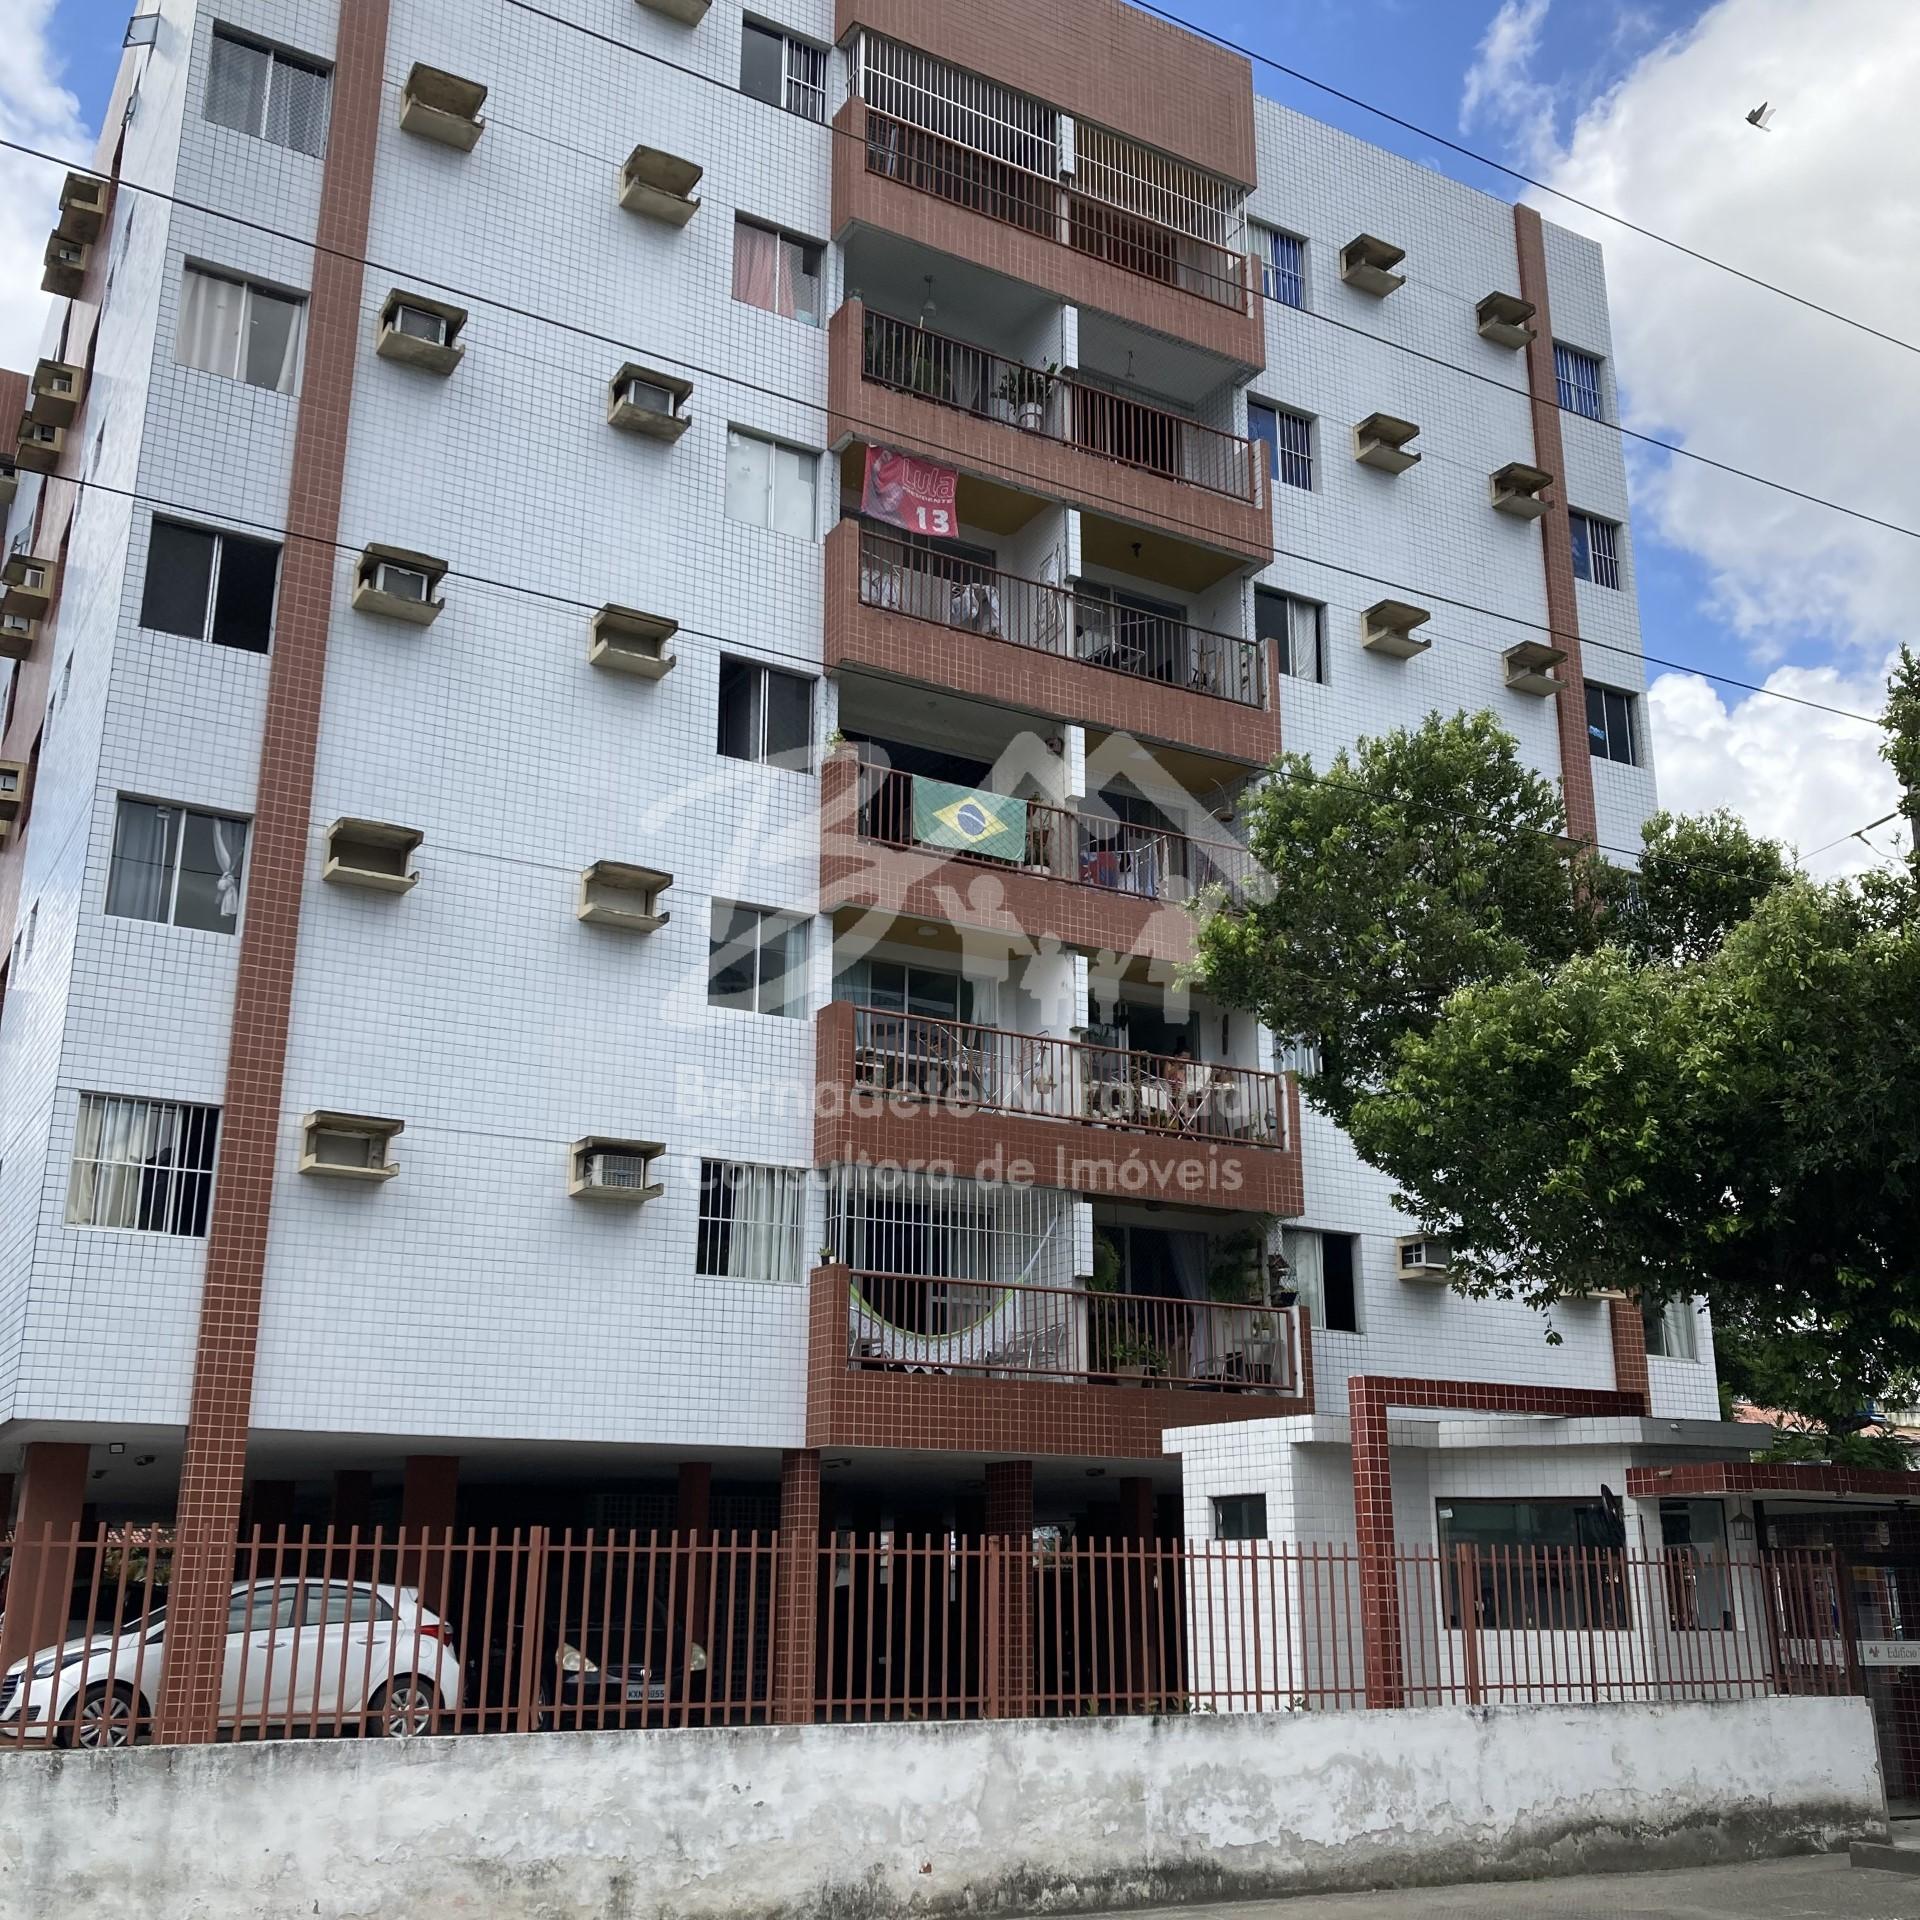 O apartamento est localizado no bairro Vrzea possui 97 metros quadrados com 3